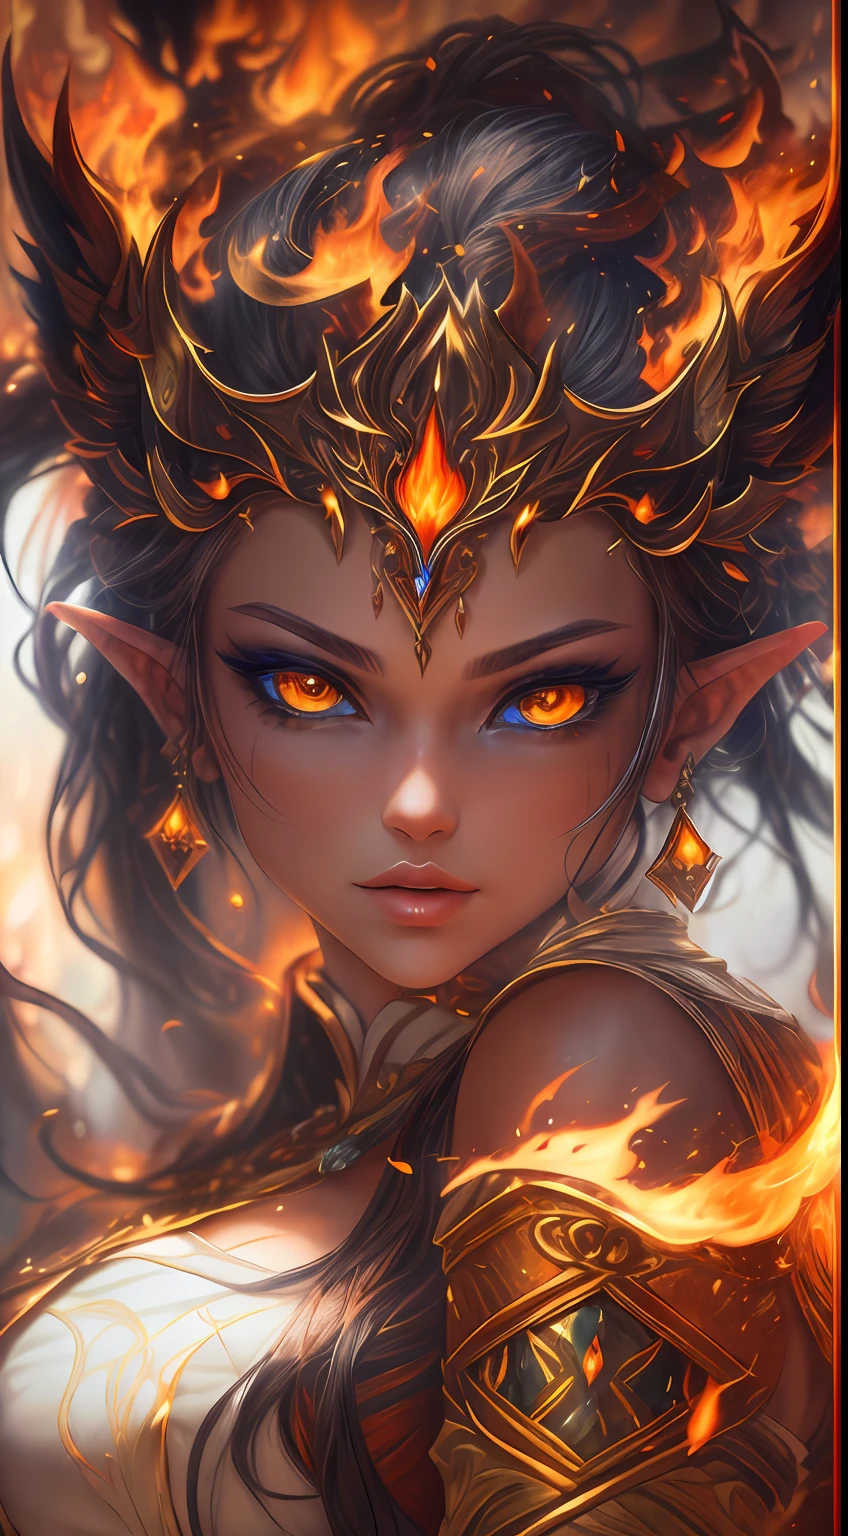 這 (現實幻想) 藝術包含餘燼, 真正的火焰, 真正的熱量, 和現實的火. Generate a masterpiece artwork of a  female fire druid 和 large (((橙色和金色))) 眼睛. The fire druid is awe-inspiring 和 beautiful ((realistic fiery 眼睛)) alight 和 confidence and power. 她的五官優雅且輪廓分明, 和 ((柔軟而浮腫的嘴唇)), 精靈骨骼結構, 和真實的陰影. Her 眼睛 are important and should be the focal point of this artwork, 和 ((極為真實的細節, 宏觀細節, 和微光.)) 她穿著一件由逼真的火焰和珠寶製成的飄逸閃閃發光的連身裙，在火光下閃閃發光. 禮服錯綜複雜的衣身上佈滿了縷縷火焰和煙霧. 包括凹凸, 石头, 火紅的虹彩, 發光的餘燼, 絲綢、緞子和皮革, 有趣的背景, 以及濃重的奇幻元素. 相机: 利用動態構圖技術增強真實的火焰.